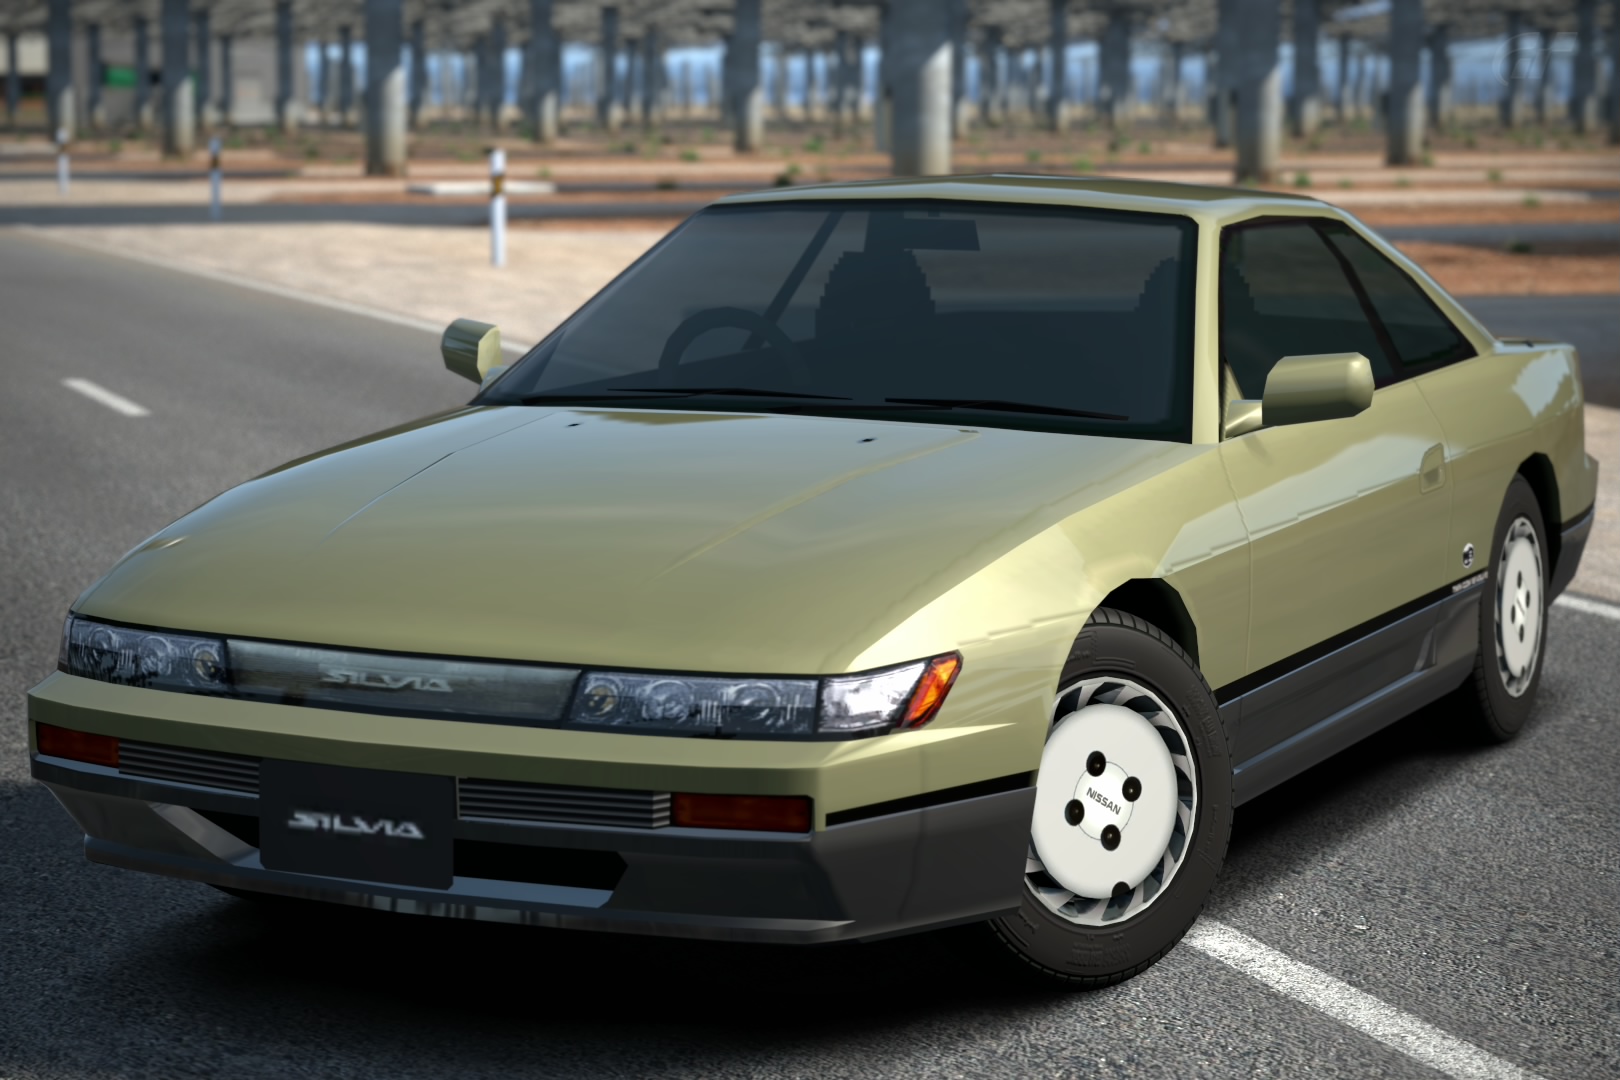 Nissan Silvia Q S S13 91 Gran Turismo Wiki Fandom